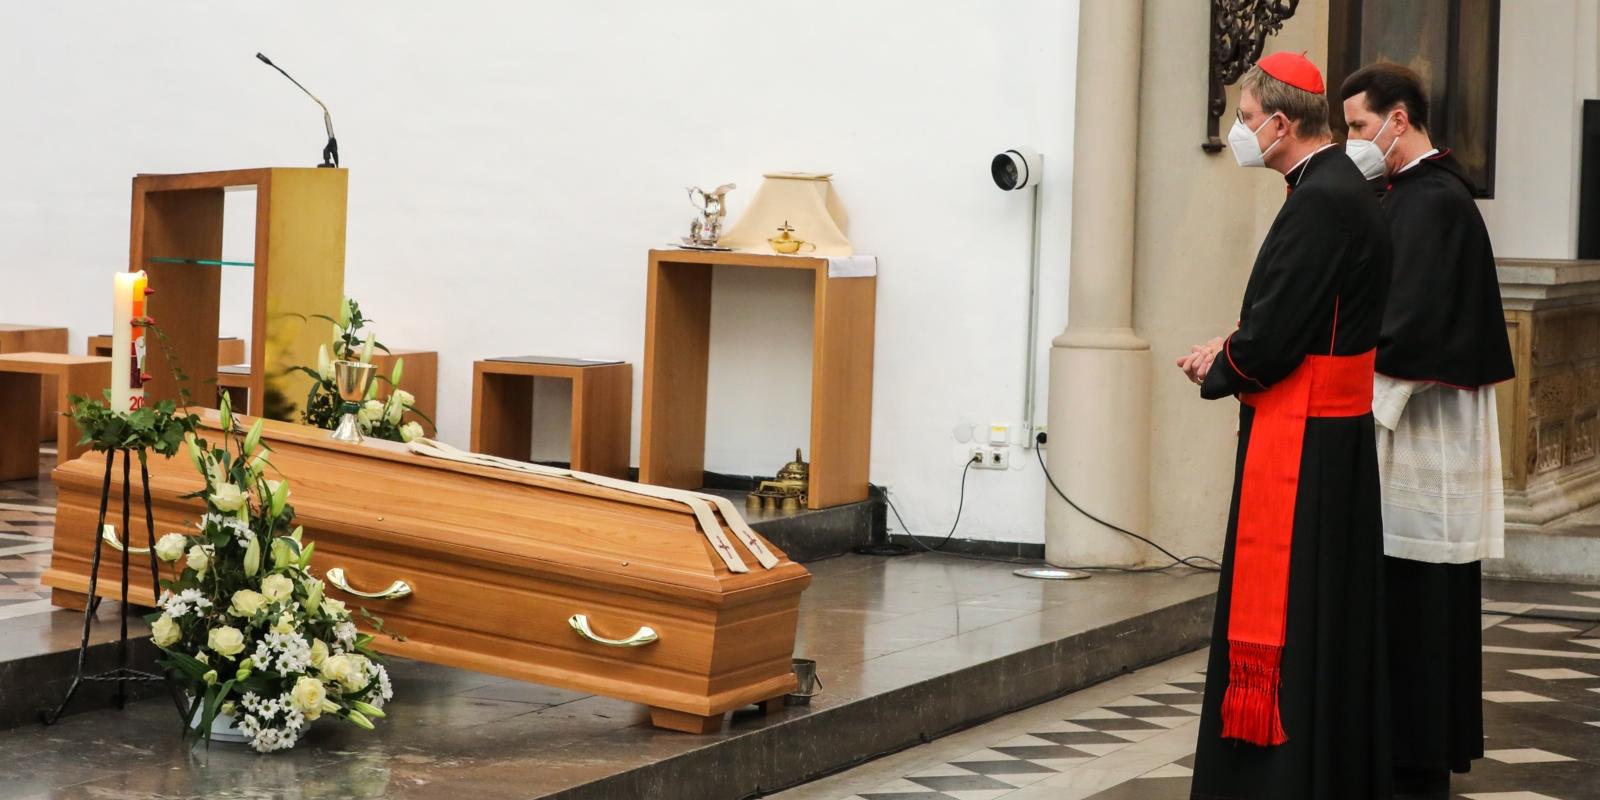 Erzbischof Rainer Maria Kardinal Woelki hat gemeinsam mit Stadtdechant Dr. Wolfgang Picken in St. Remigius Bonn das Requiem für Wolfgang Bretschneider gefeiert. Prof. Dr. Bretschneider ist am 12. März 2021 verstorben.